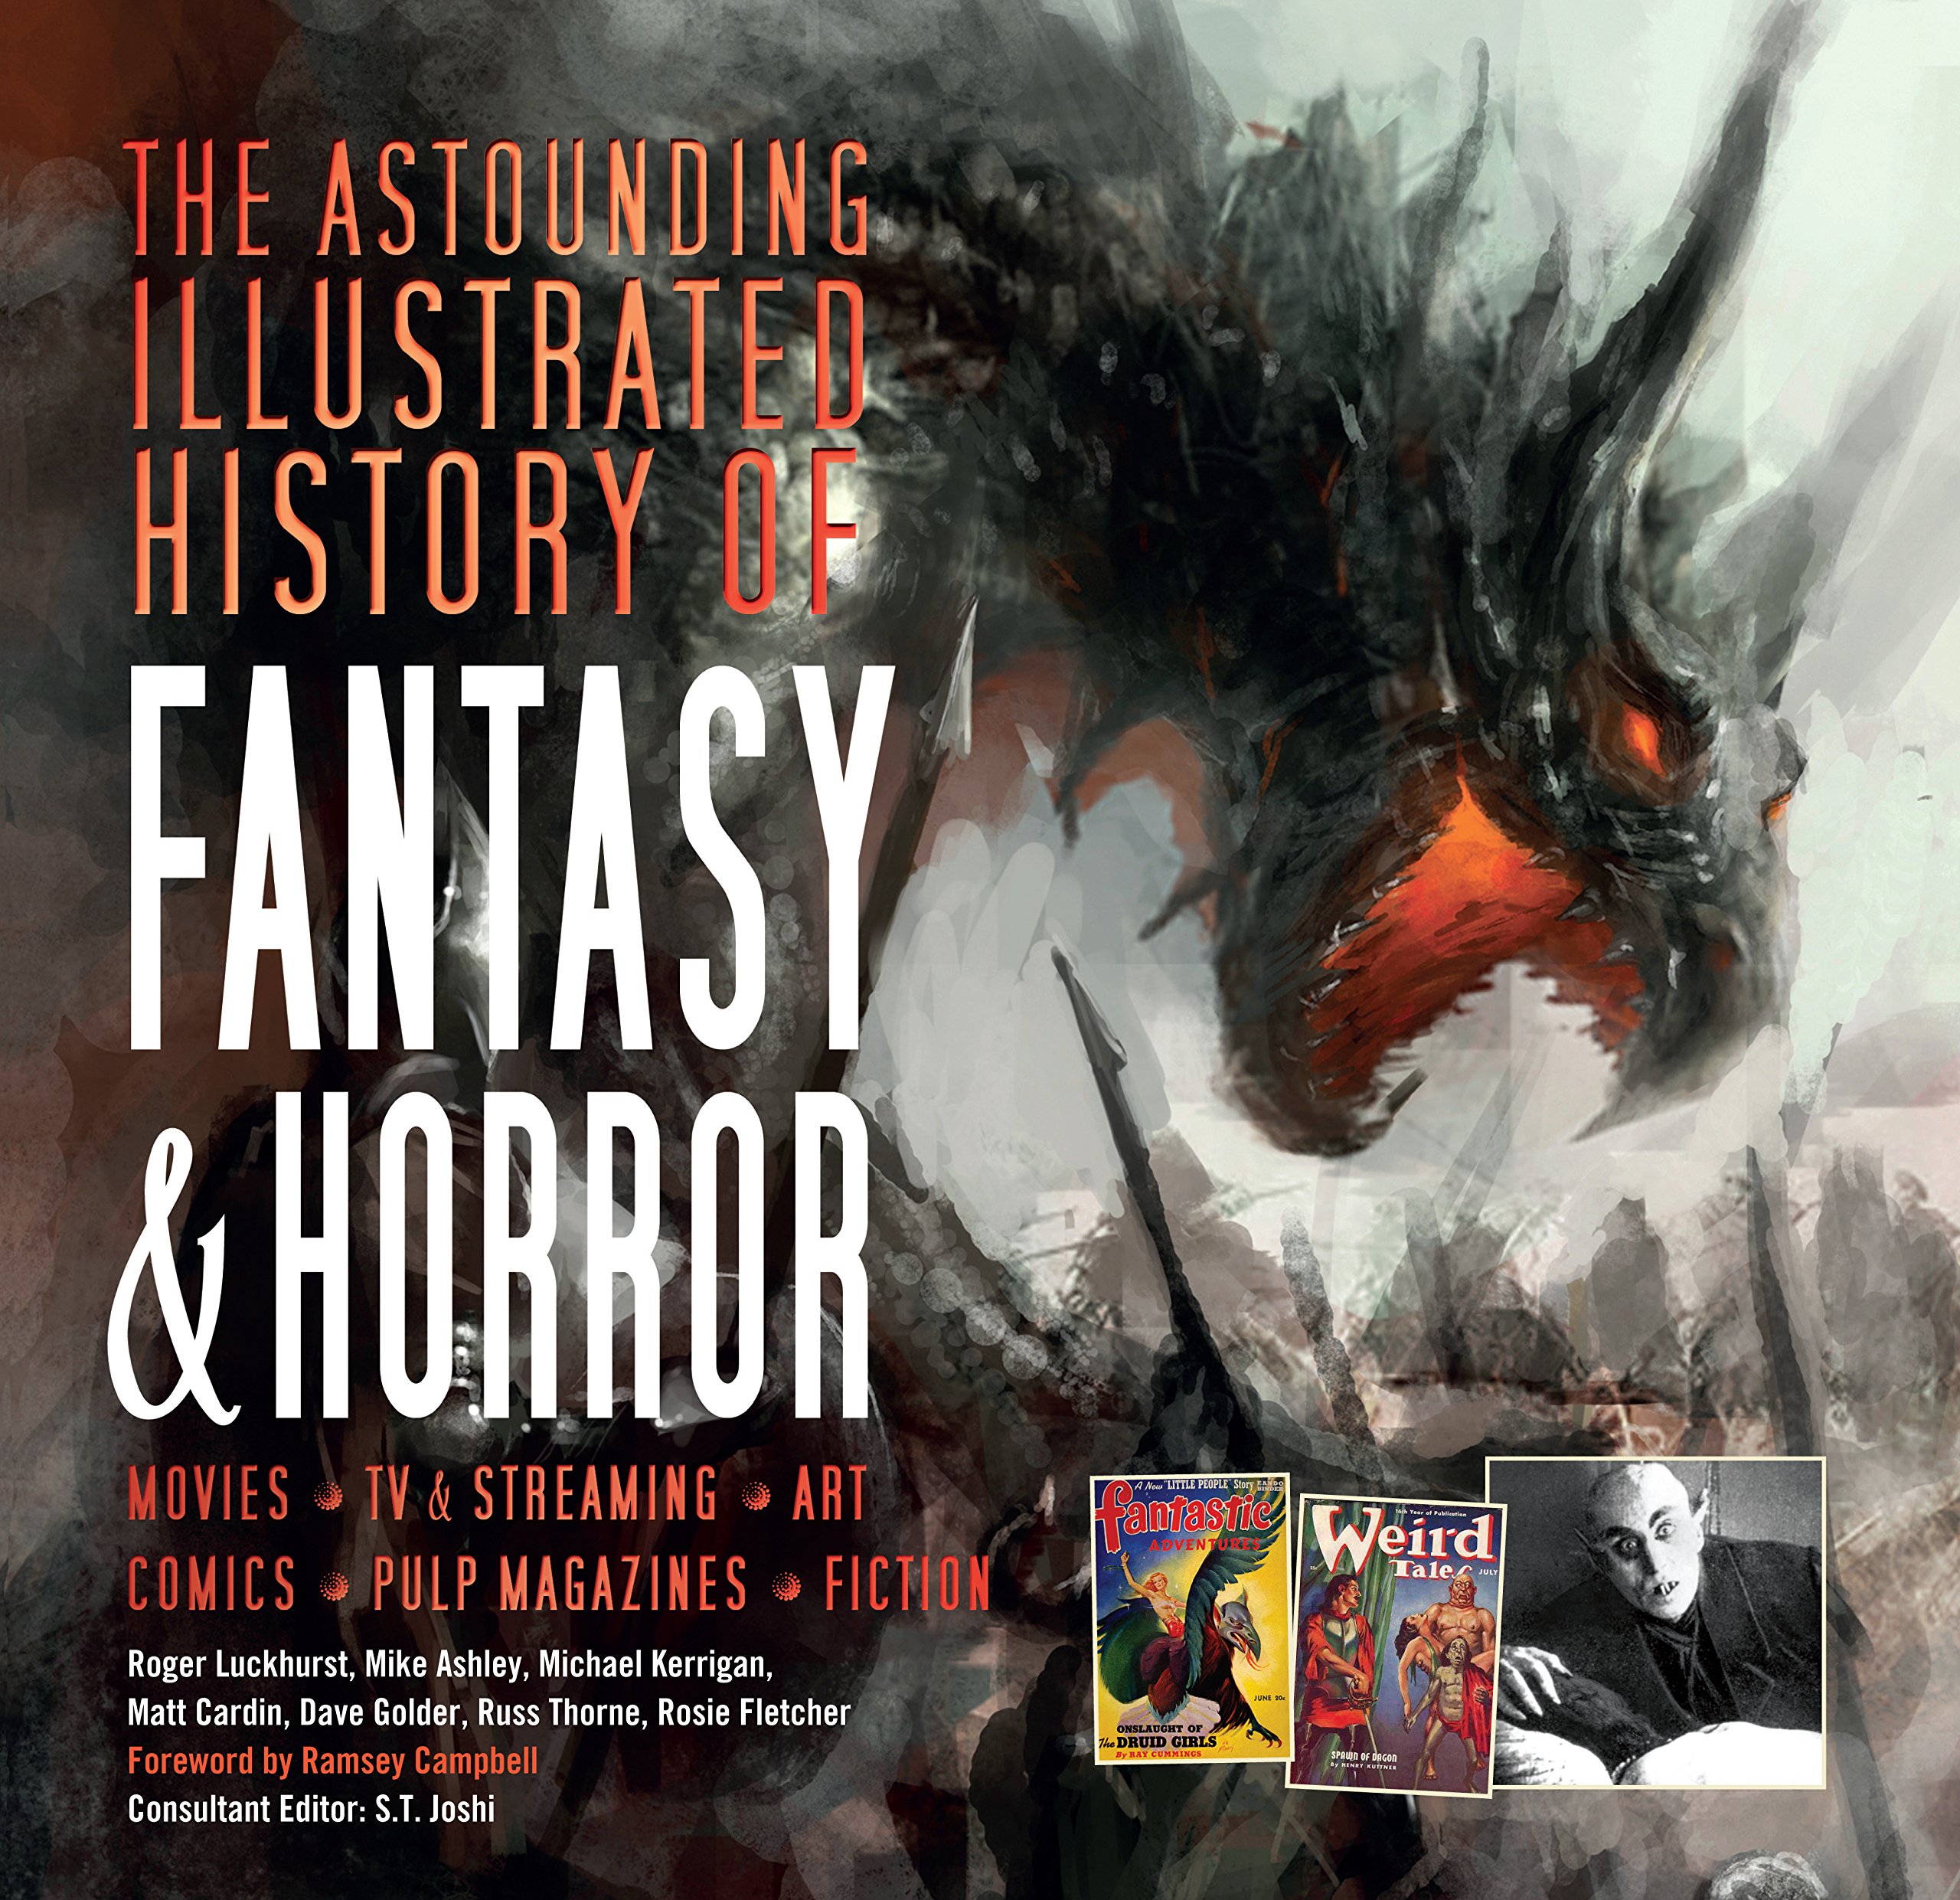 The Astounding Illustrated History of Fantasy & Horror | Roger Luckhurst, Mike Ashley, Michael Kerrigan